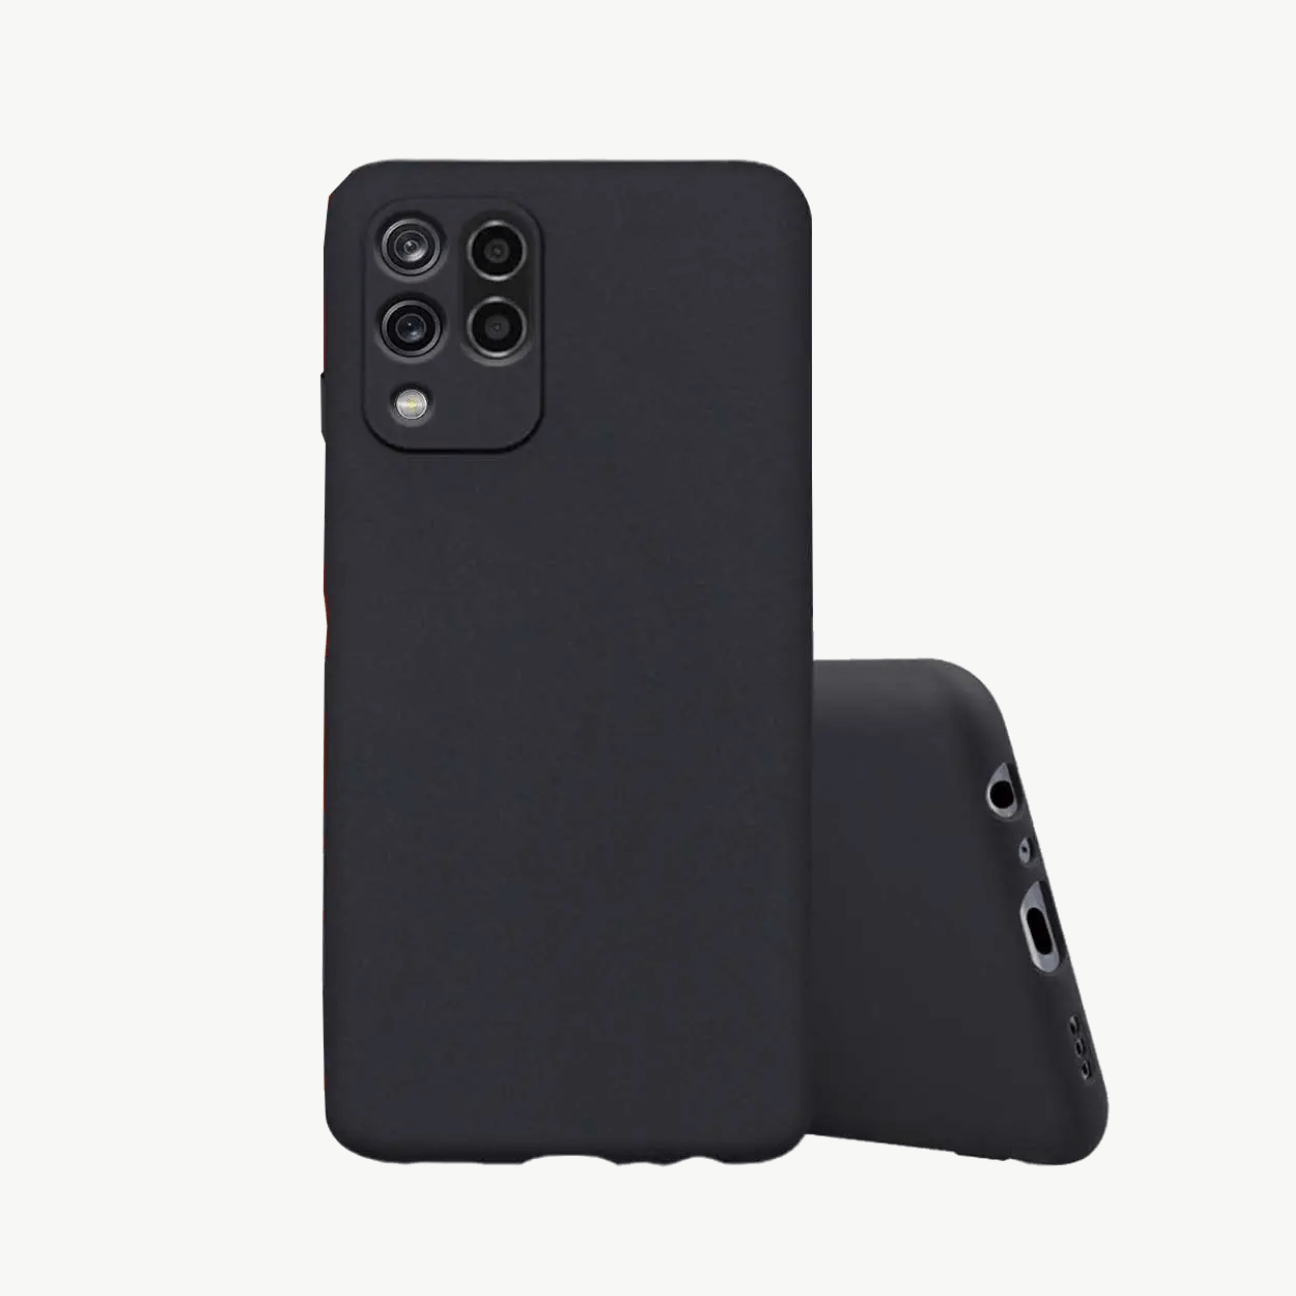 Xiaomi Redmi Note 6 Black Soft Silicone Phone Case Image